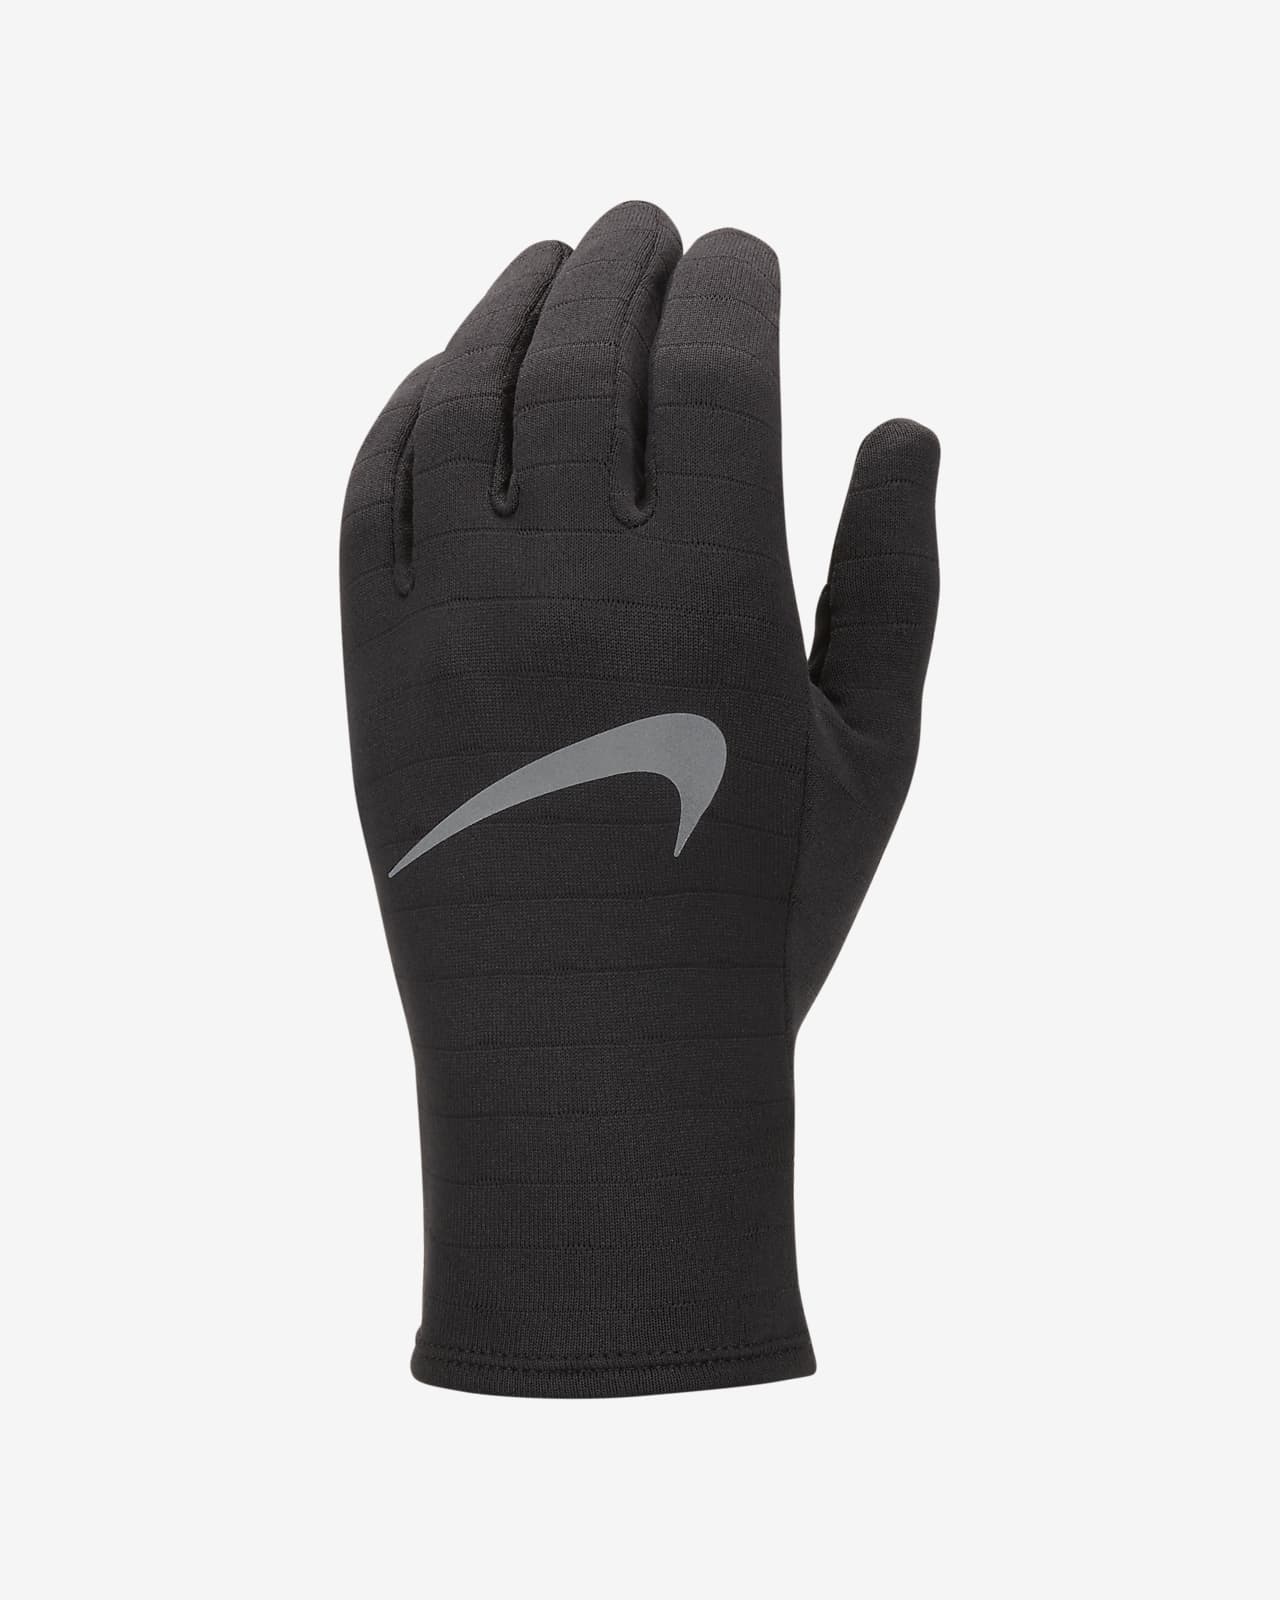 Nike polaire gants running - SP24